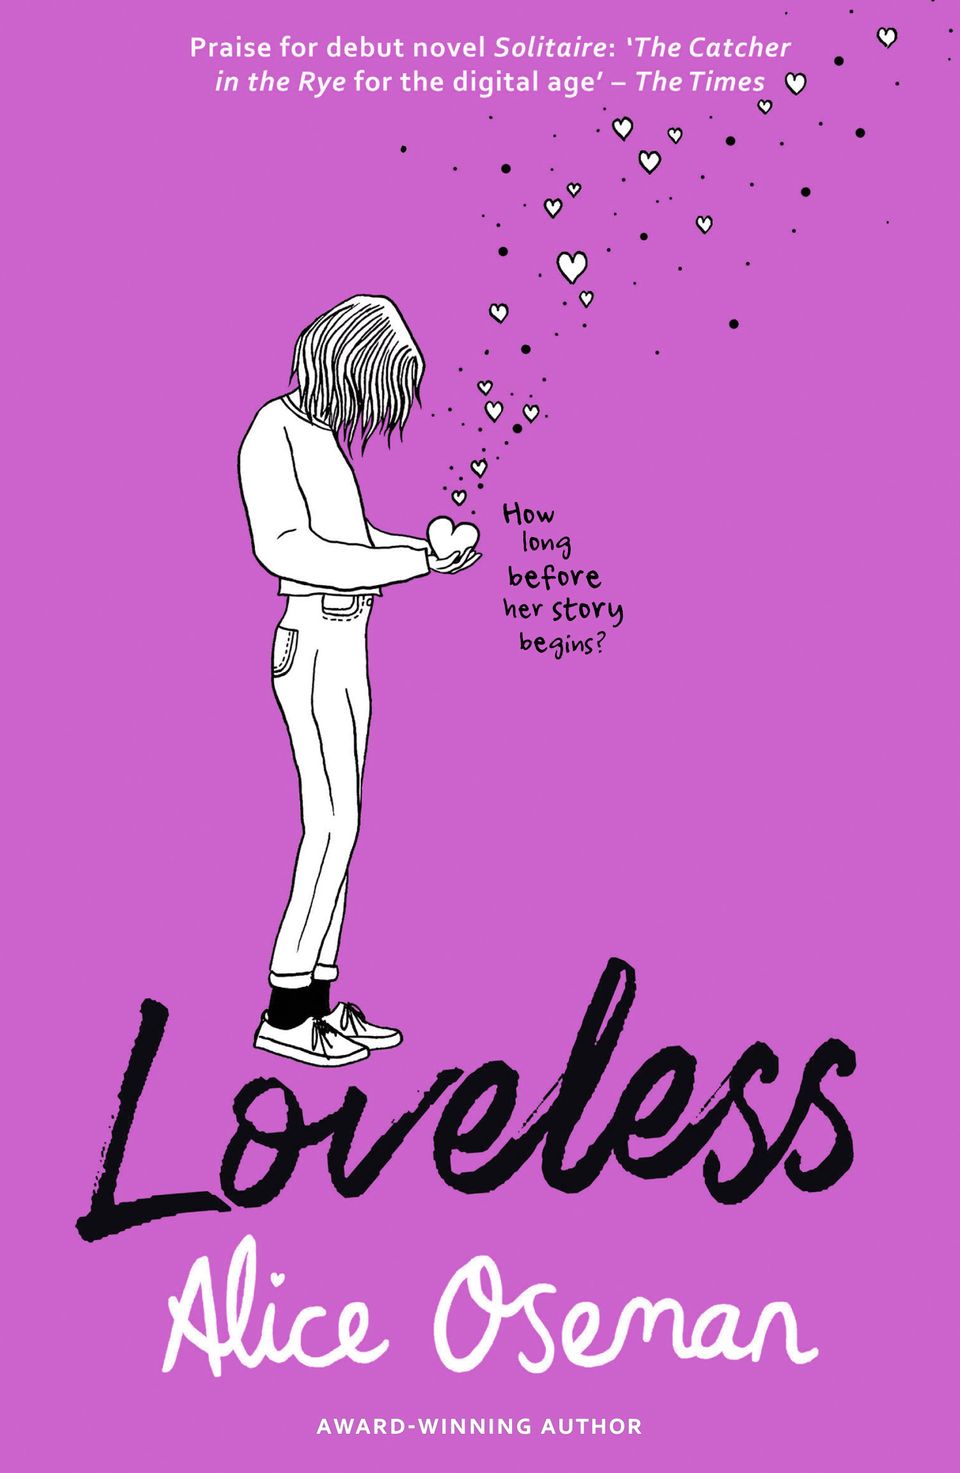 Loveless Alice Oseman Paperback